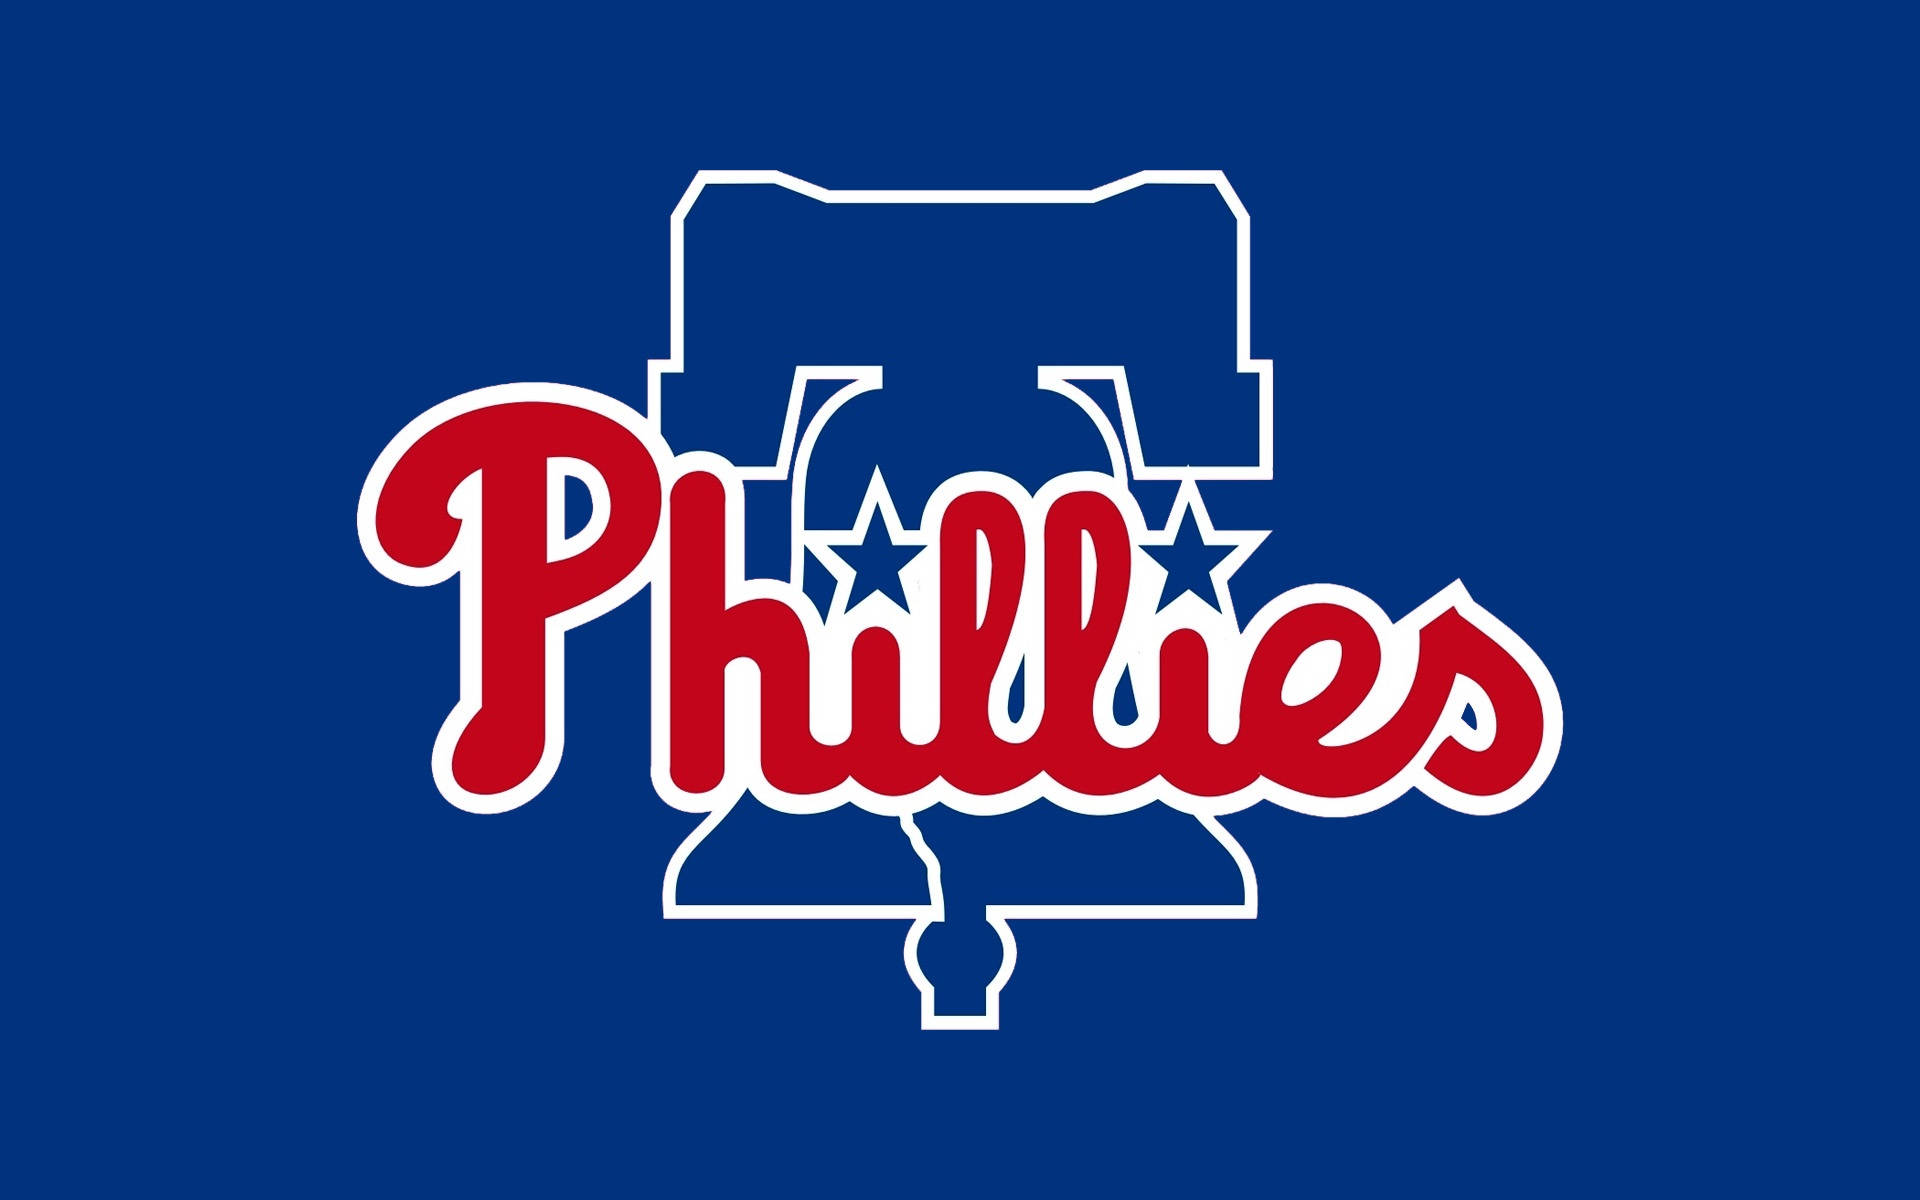 Philadelphia Phillies Baseball Team Wallpaper